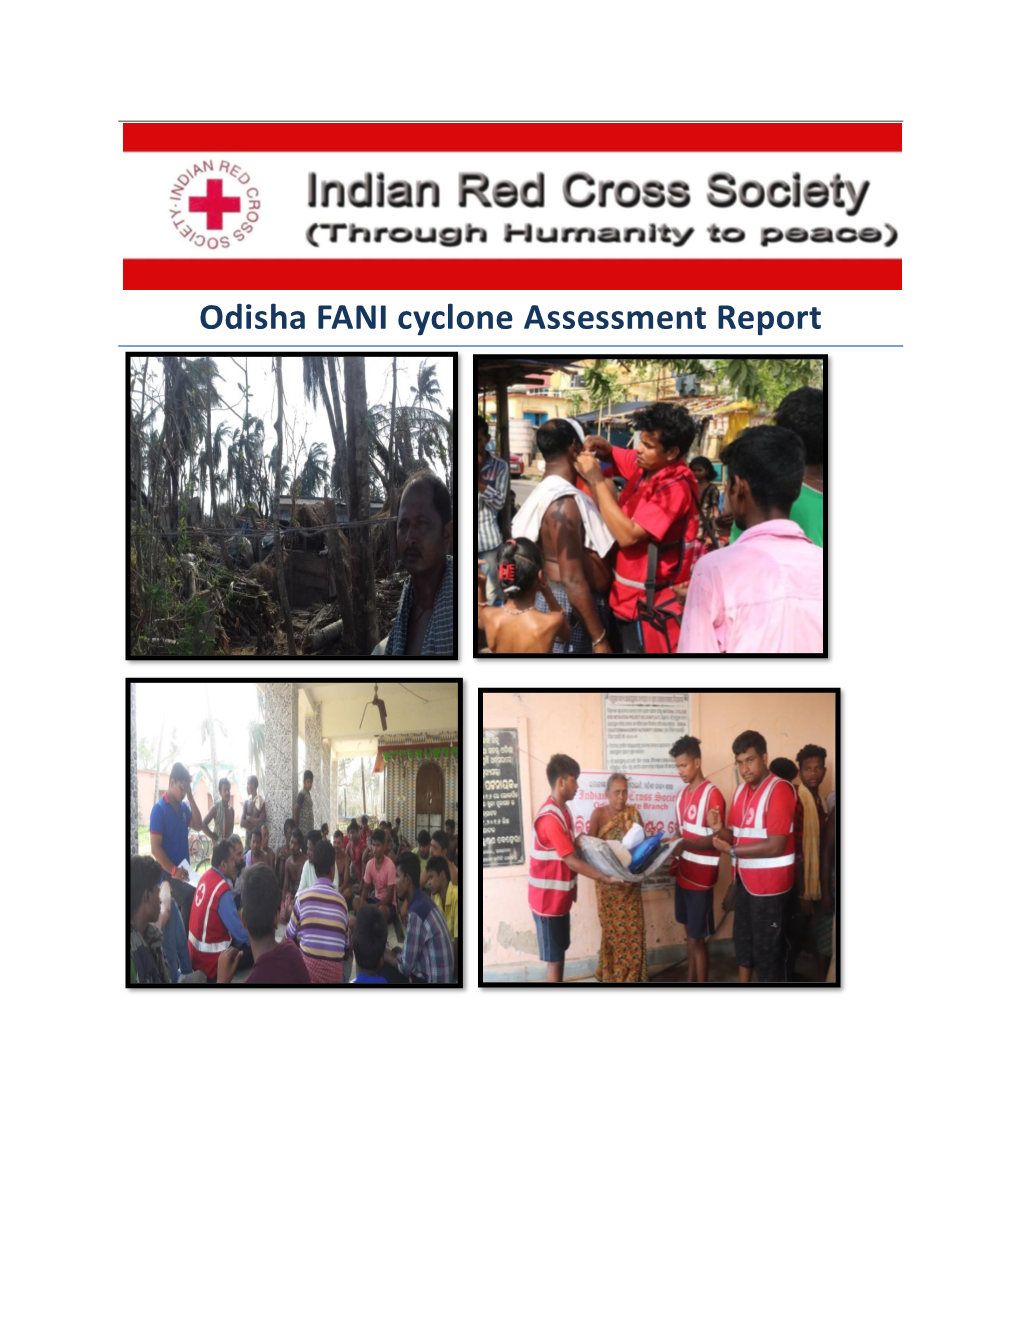 Odisha Assessment Report on Cyclone Fani